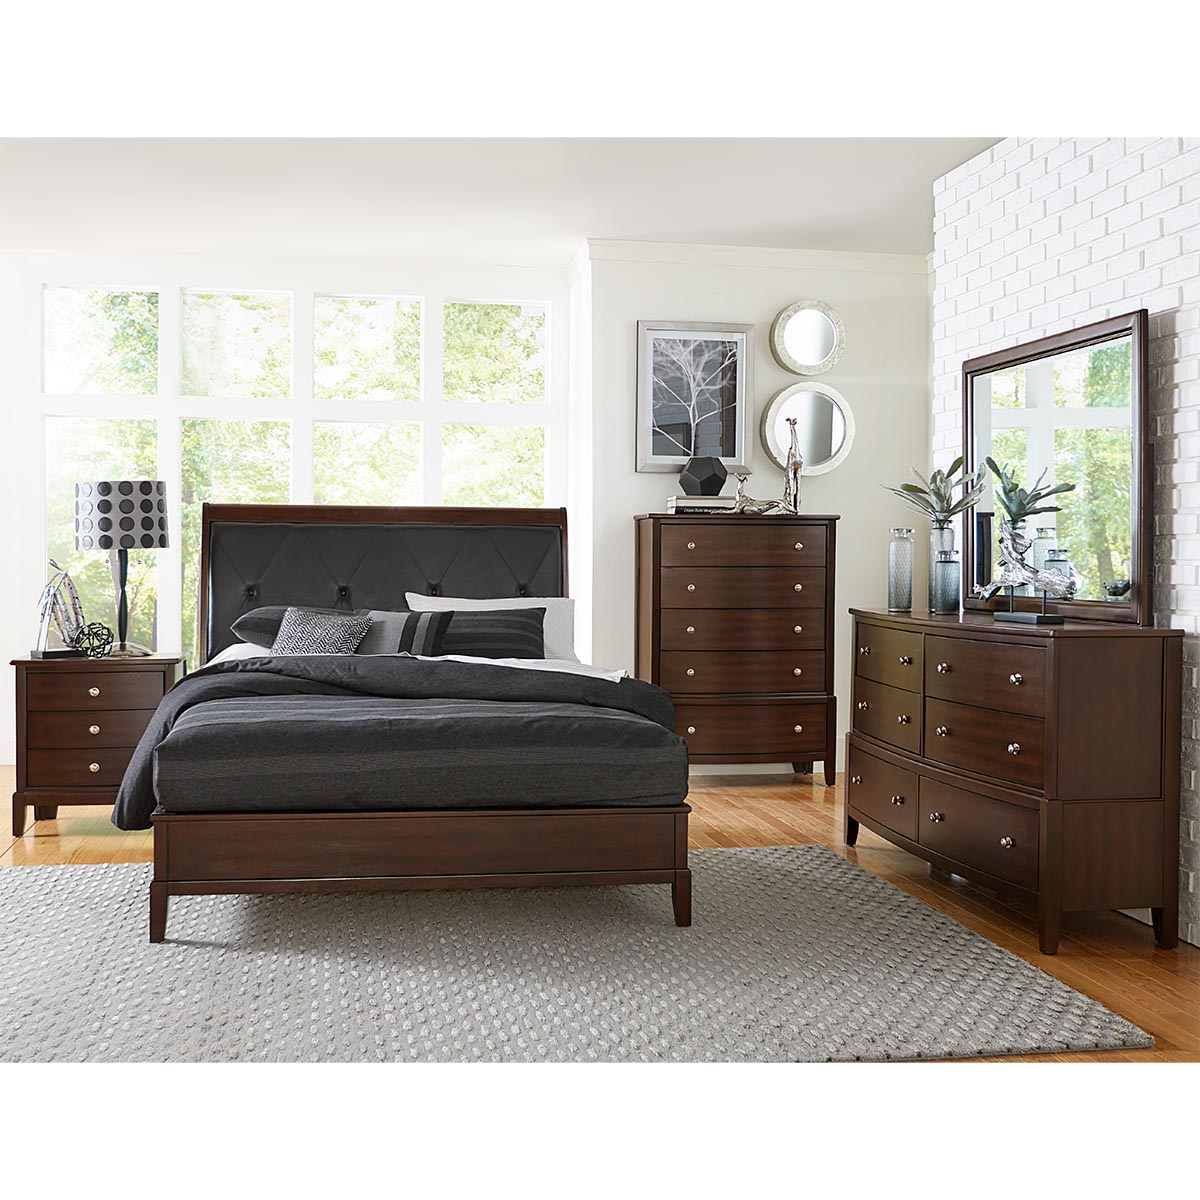 Homelegance Cherry Loft Queen Upholstered Bed, Dresser, Mirror & Nightstand